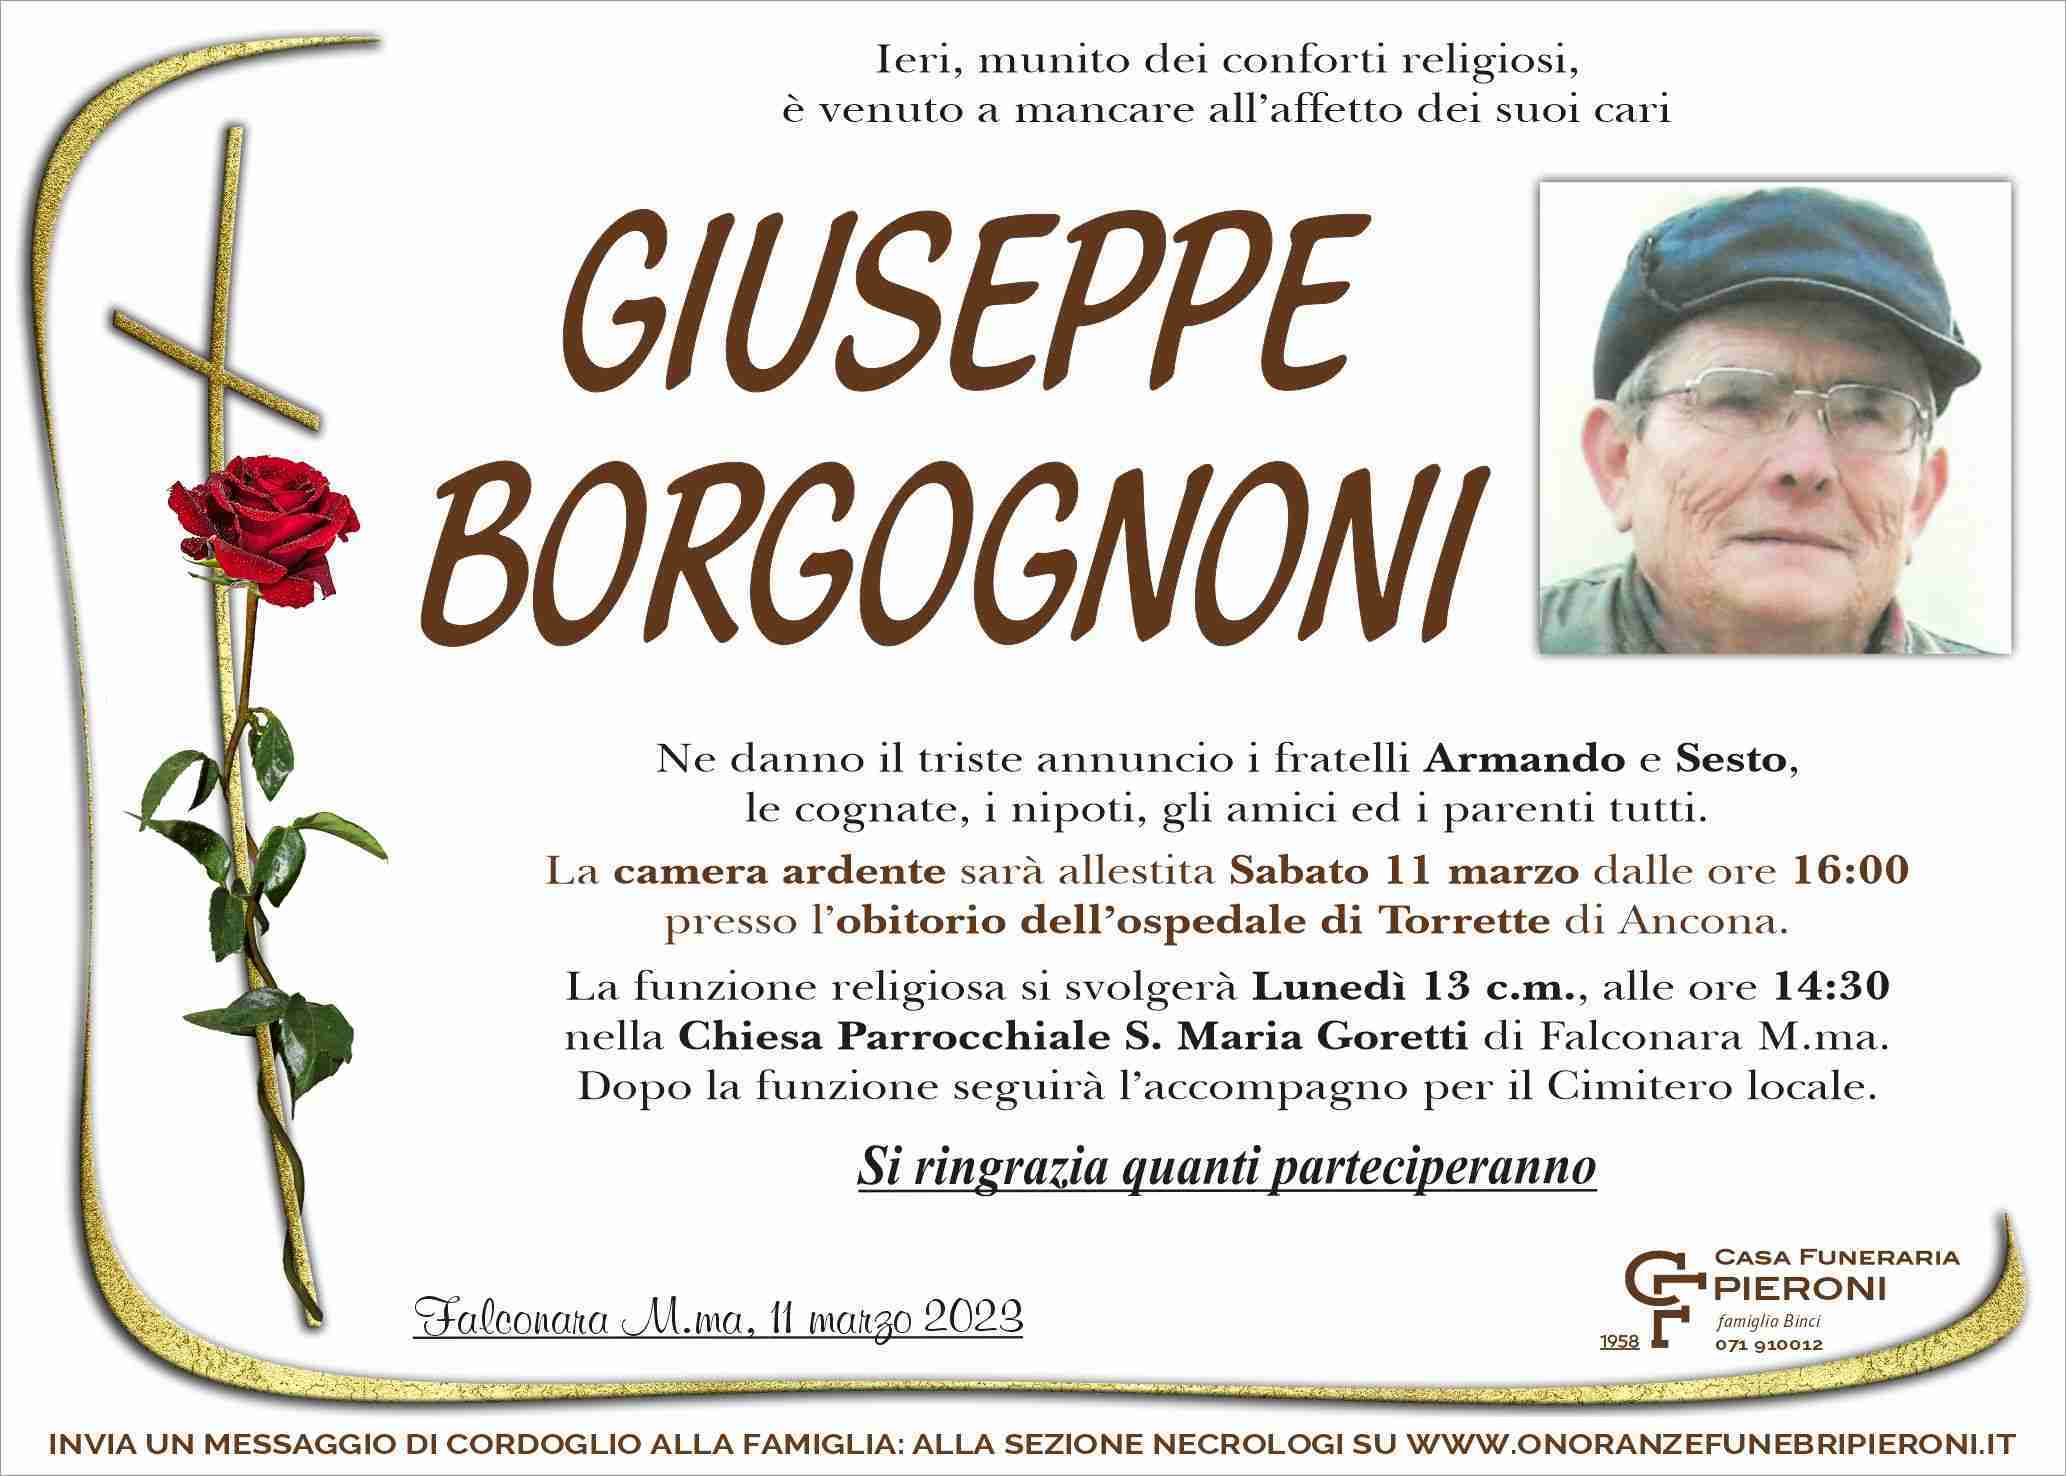 Giuseppe Borgognoni